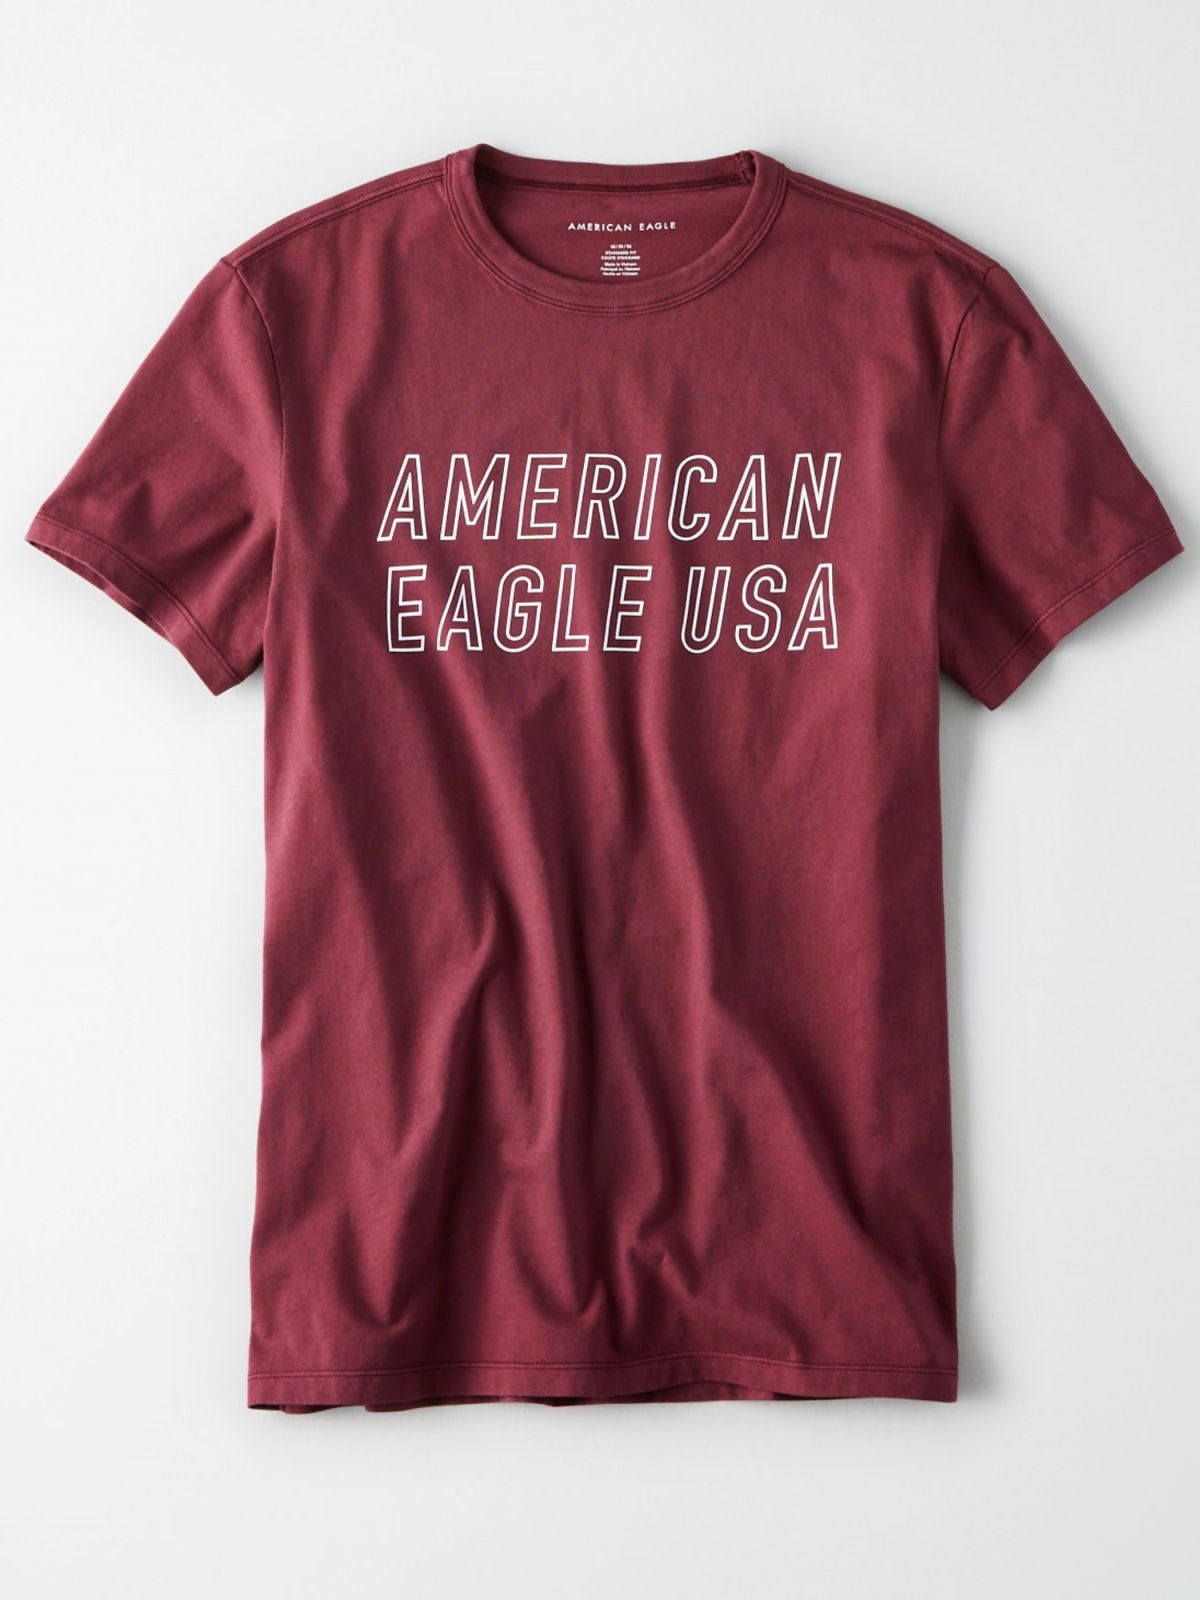  טי שירט לוגו של AMERICAN EAGLE